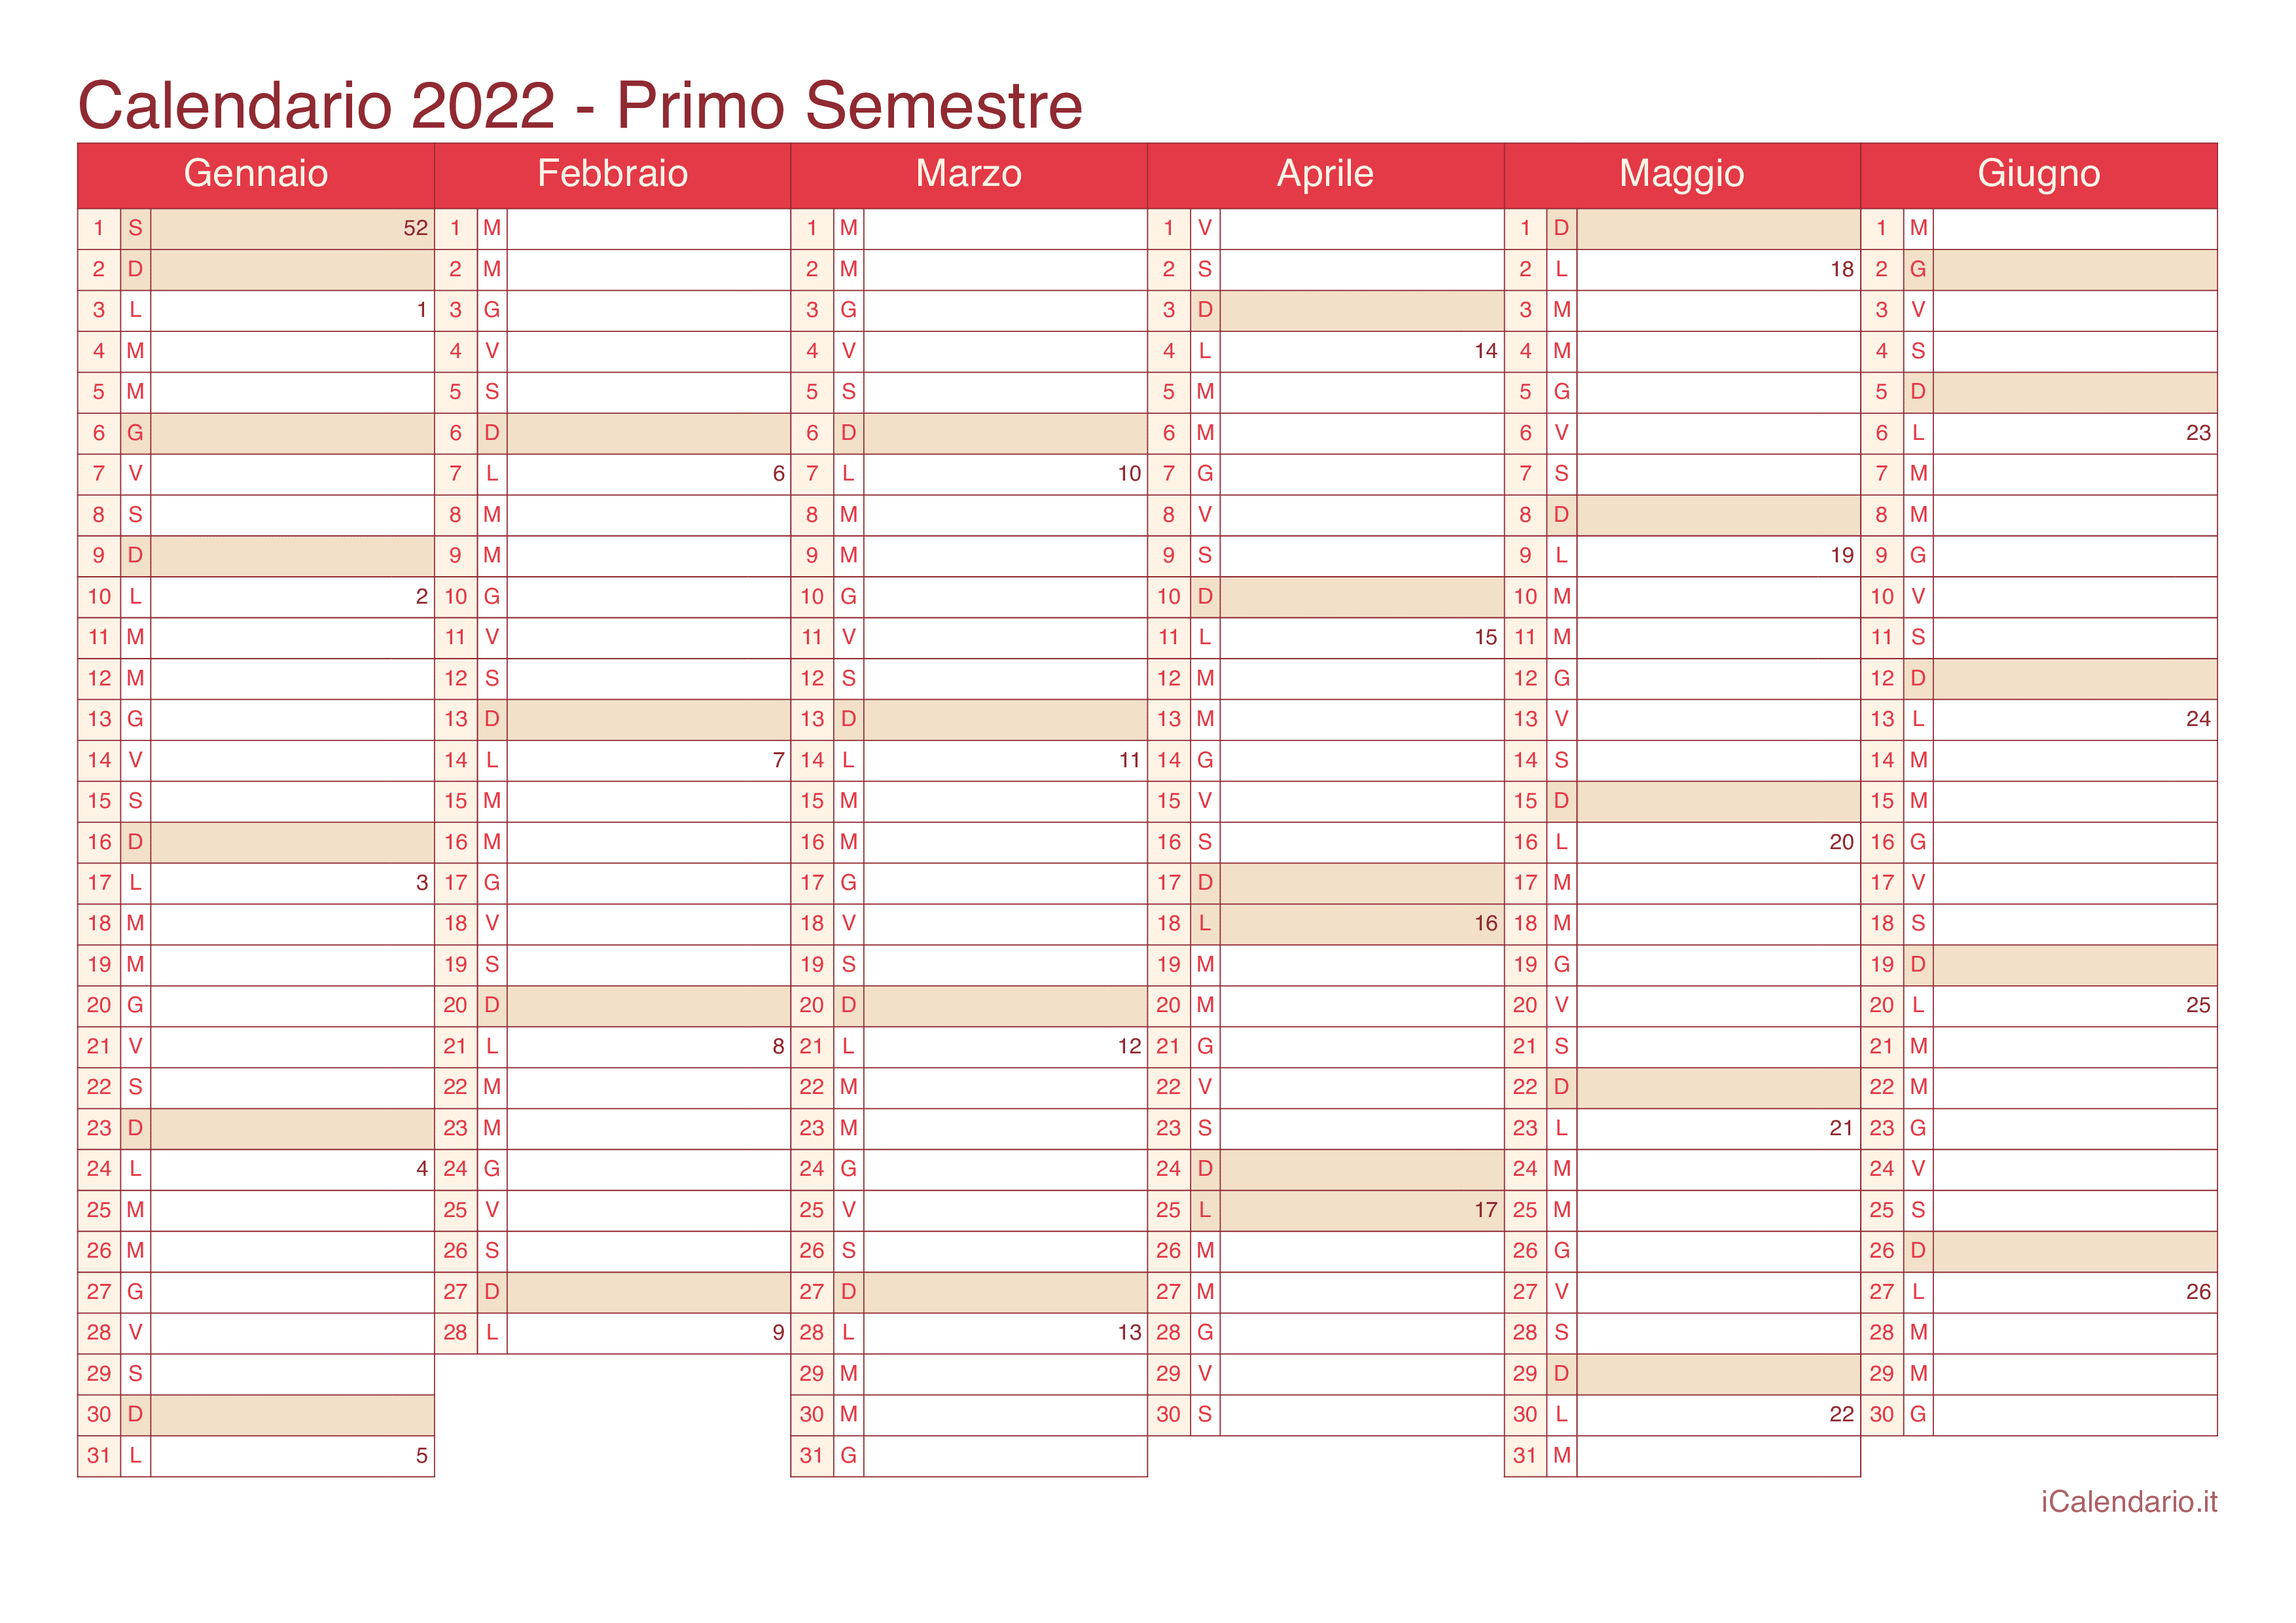 Calendario semestrale con numeri delle settimane 2022 - Cherry